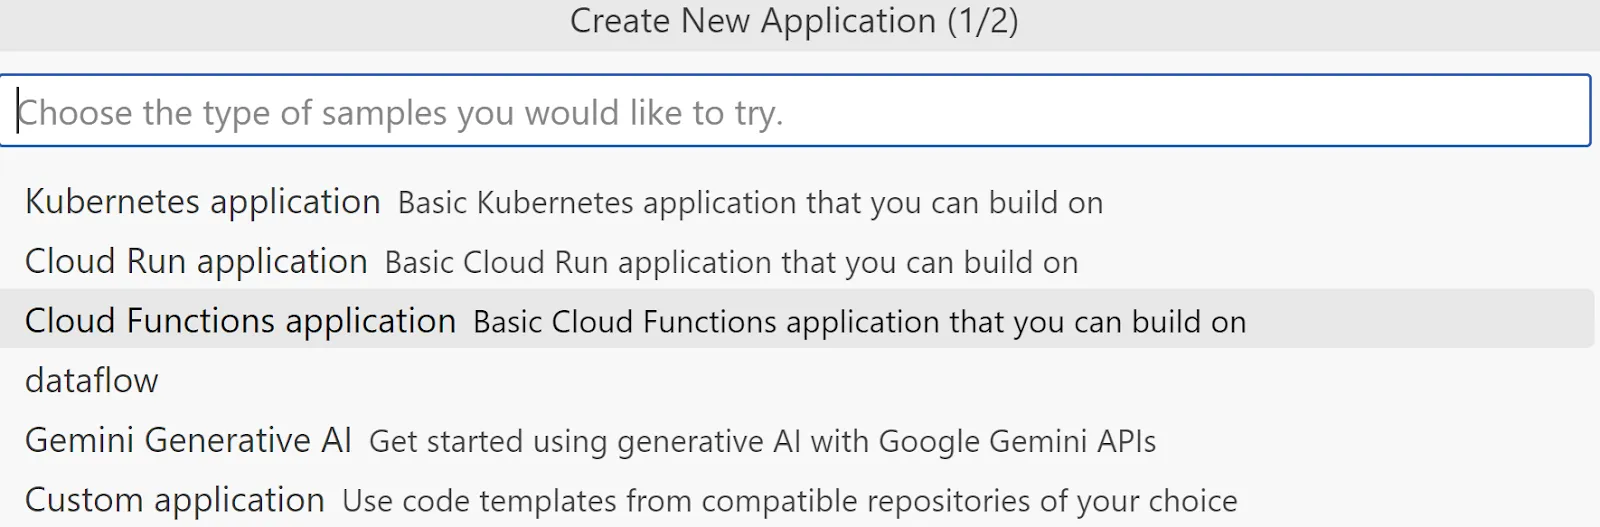 [Create New Application] ポップアップ ページ 1